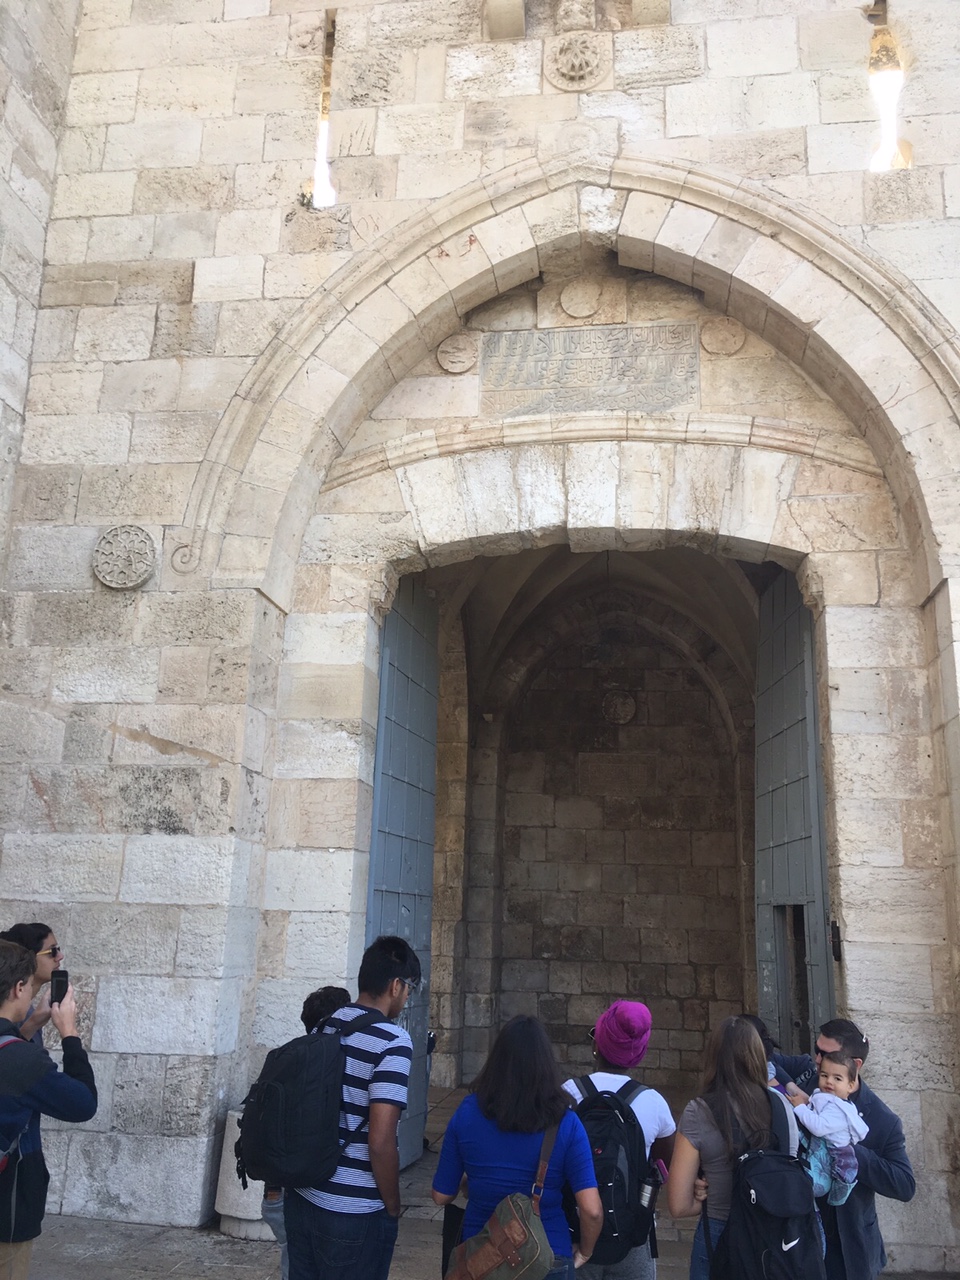 Jaffa gate to the old city of Jerusalem